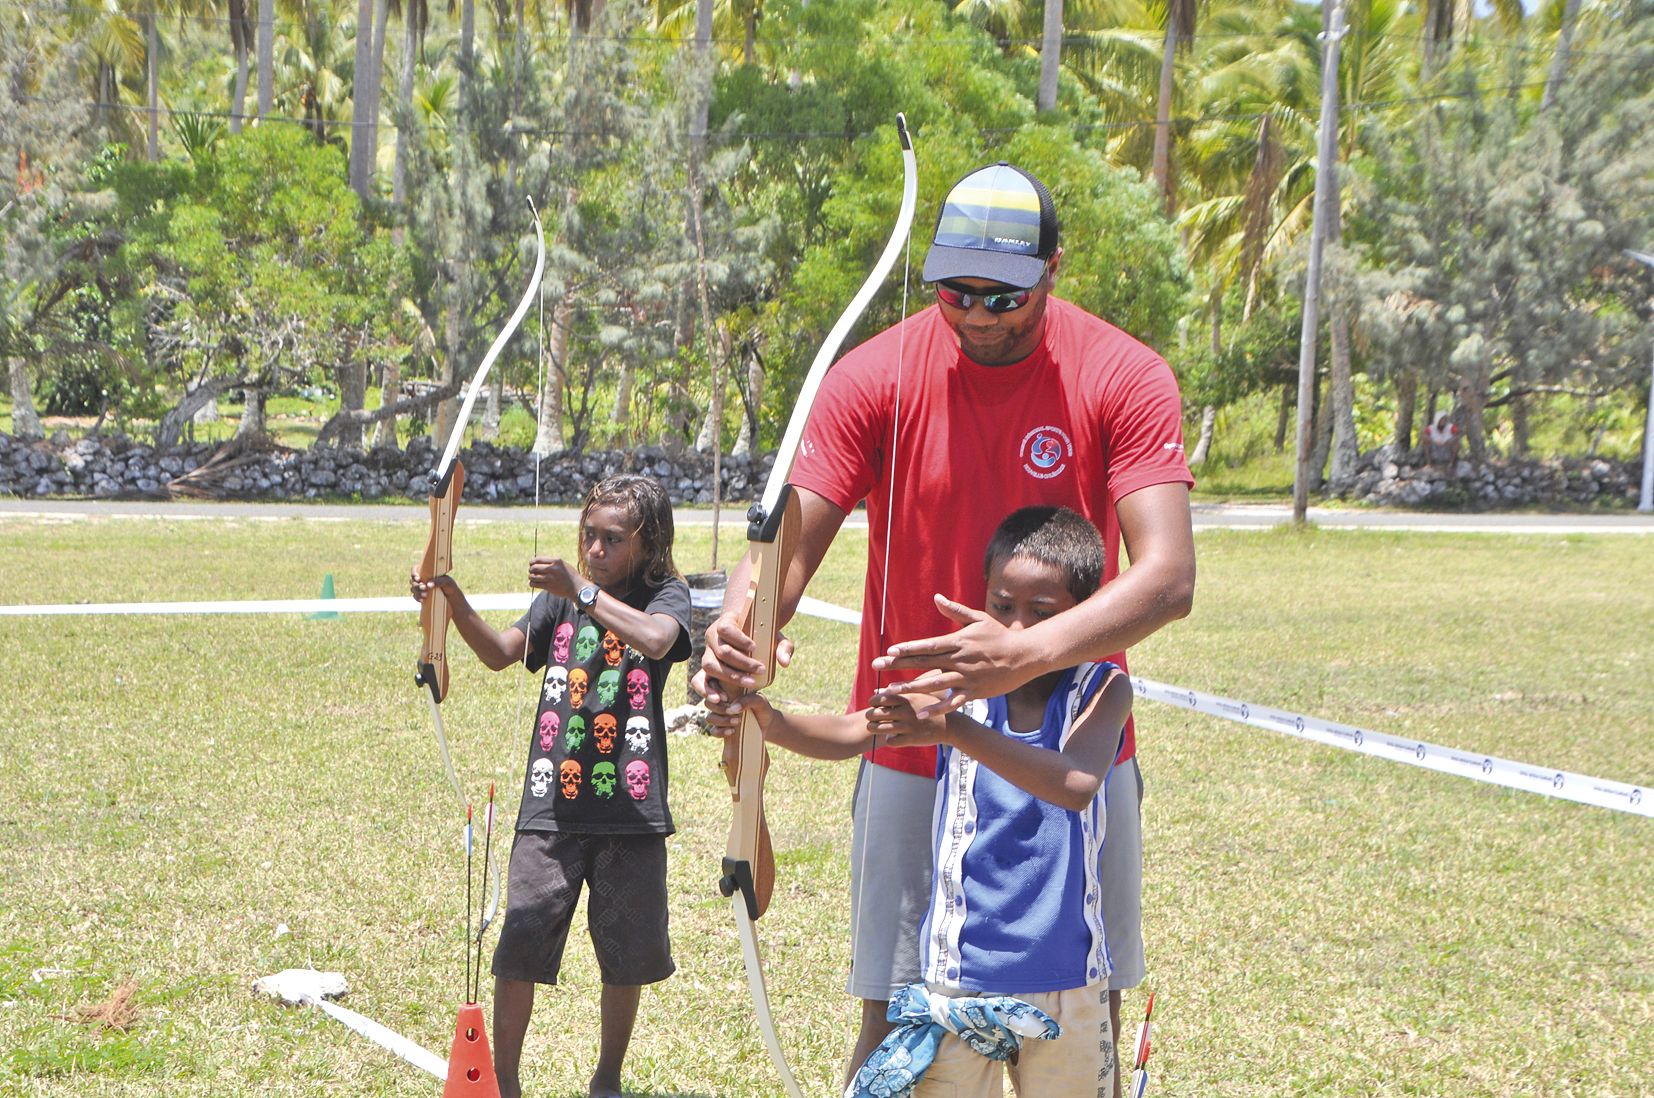 Clou de la journée, l’activité tir à l’arc proposée par Moïse Kalhemu, éducateur du Comité régional sport pour tous (CRSPT), financée par l’Office municipal des sports de Maré. « Nous voulions amener une activité innovante, méconnue dans les îles, pour su